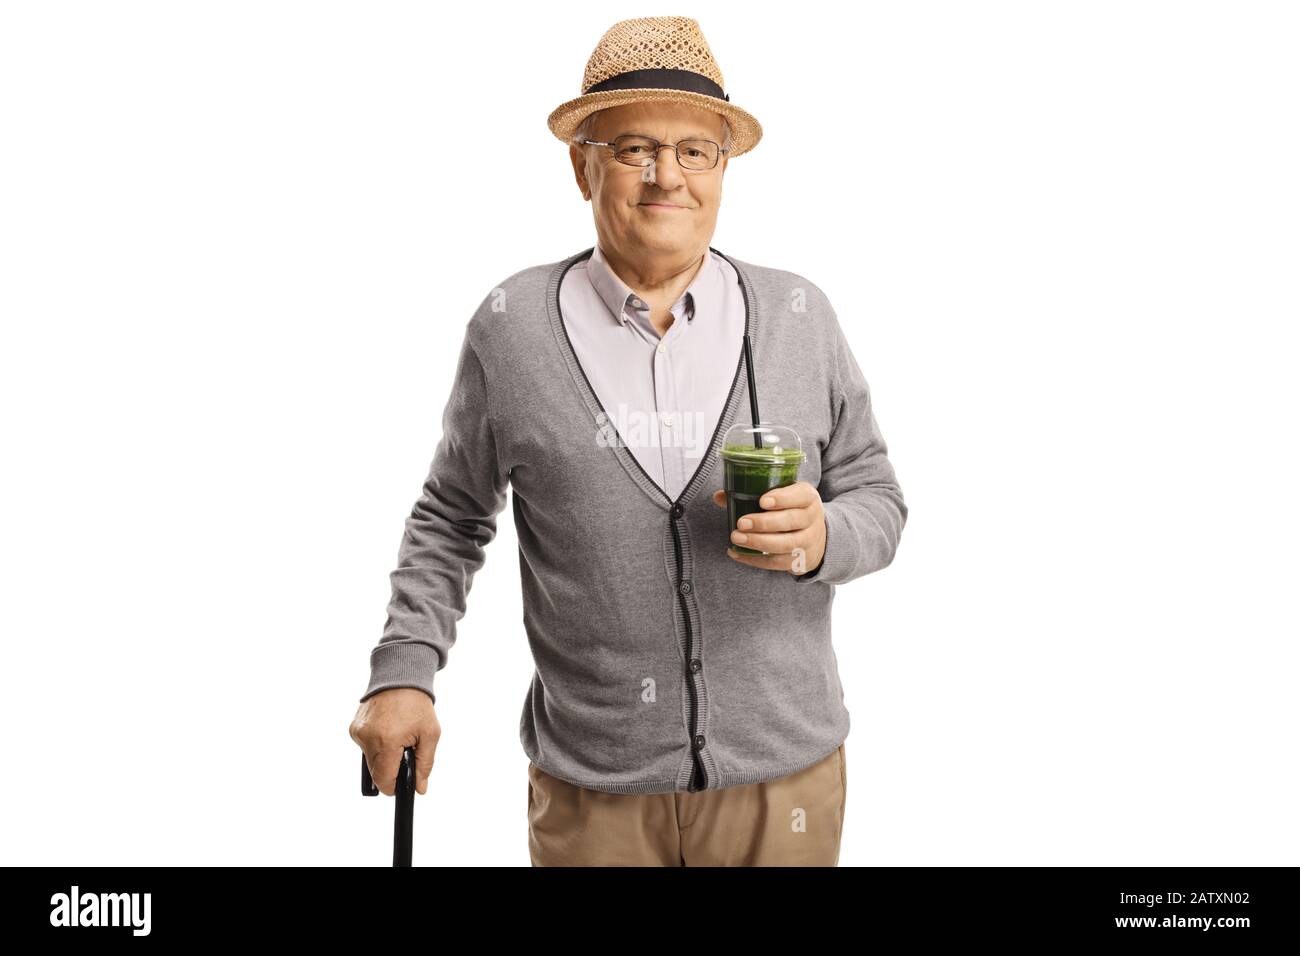 Senior Gentleman mit einem Gehstock, der einen gesunden grünen Smoothie hält, der auf weißem Hintergrund isoliert ist Stockfoto